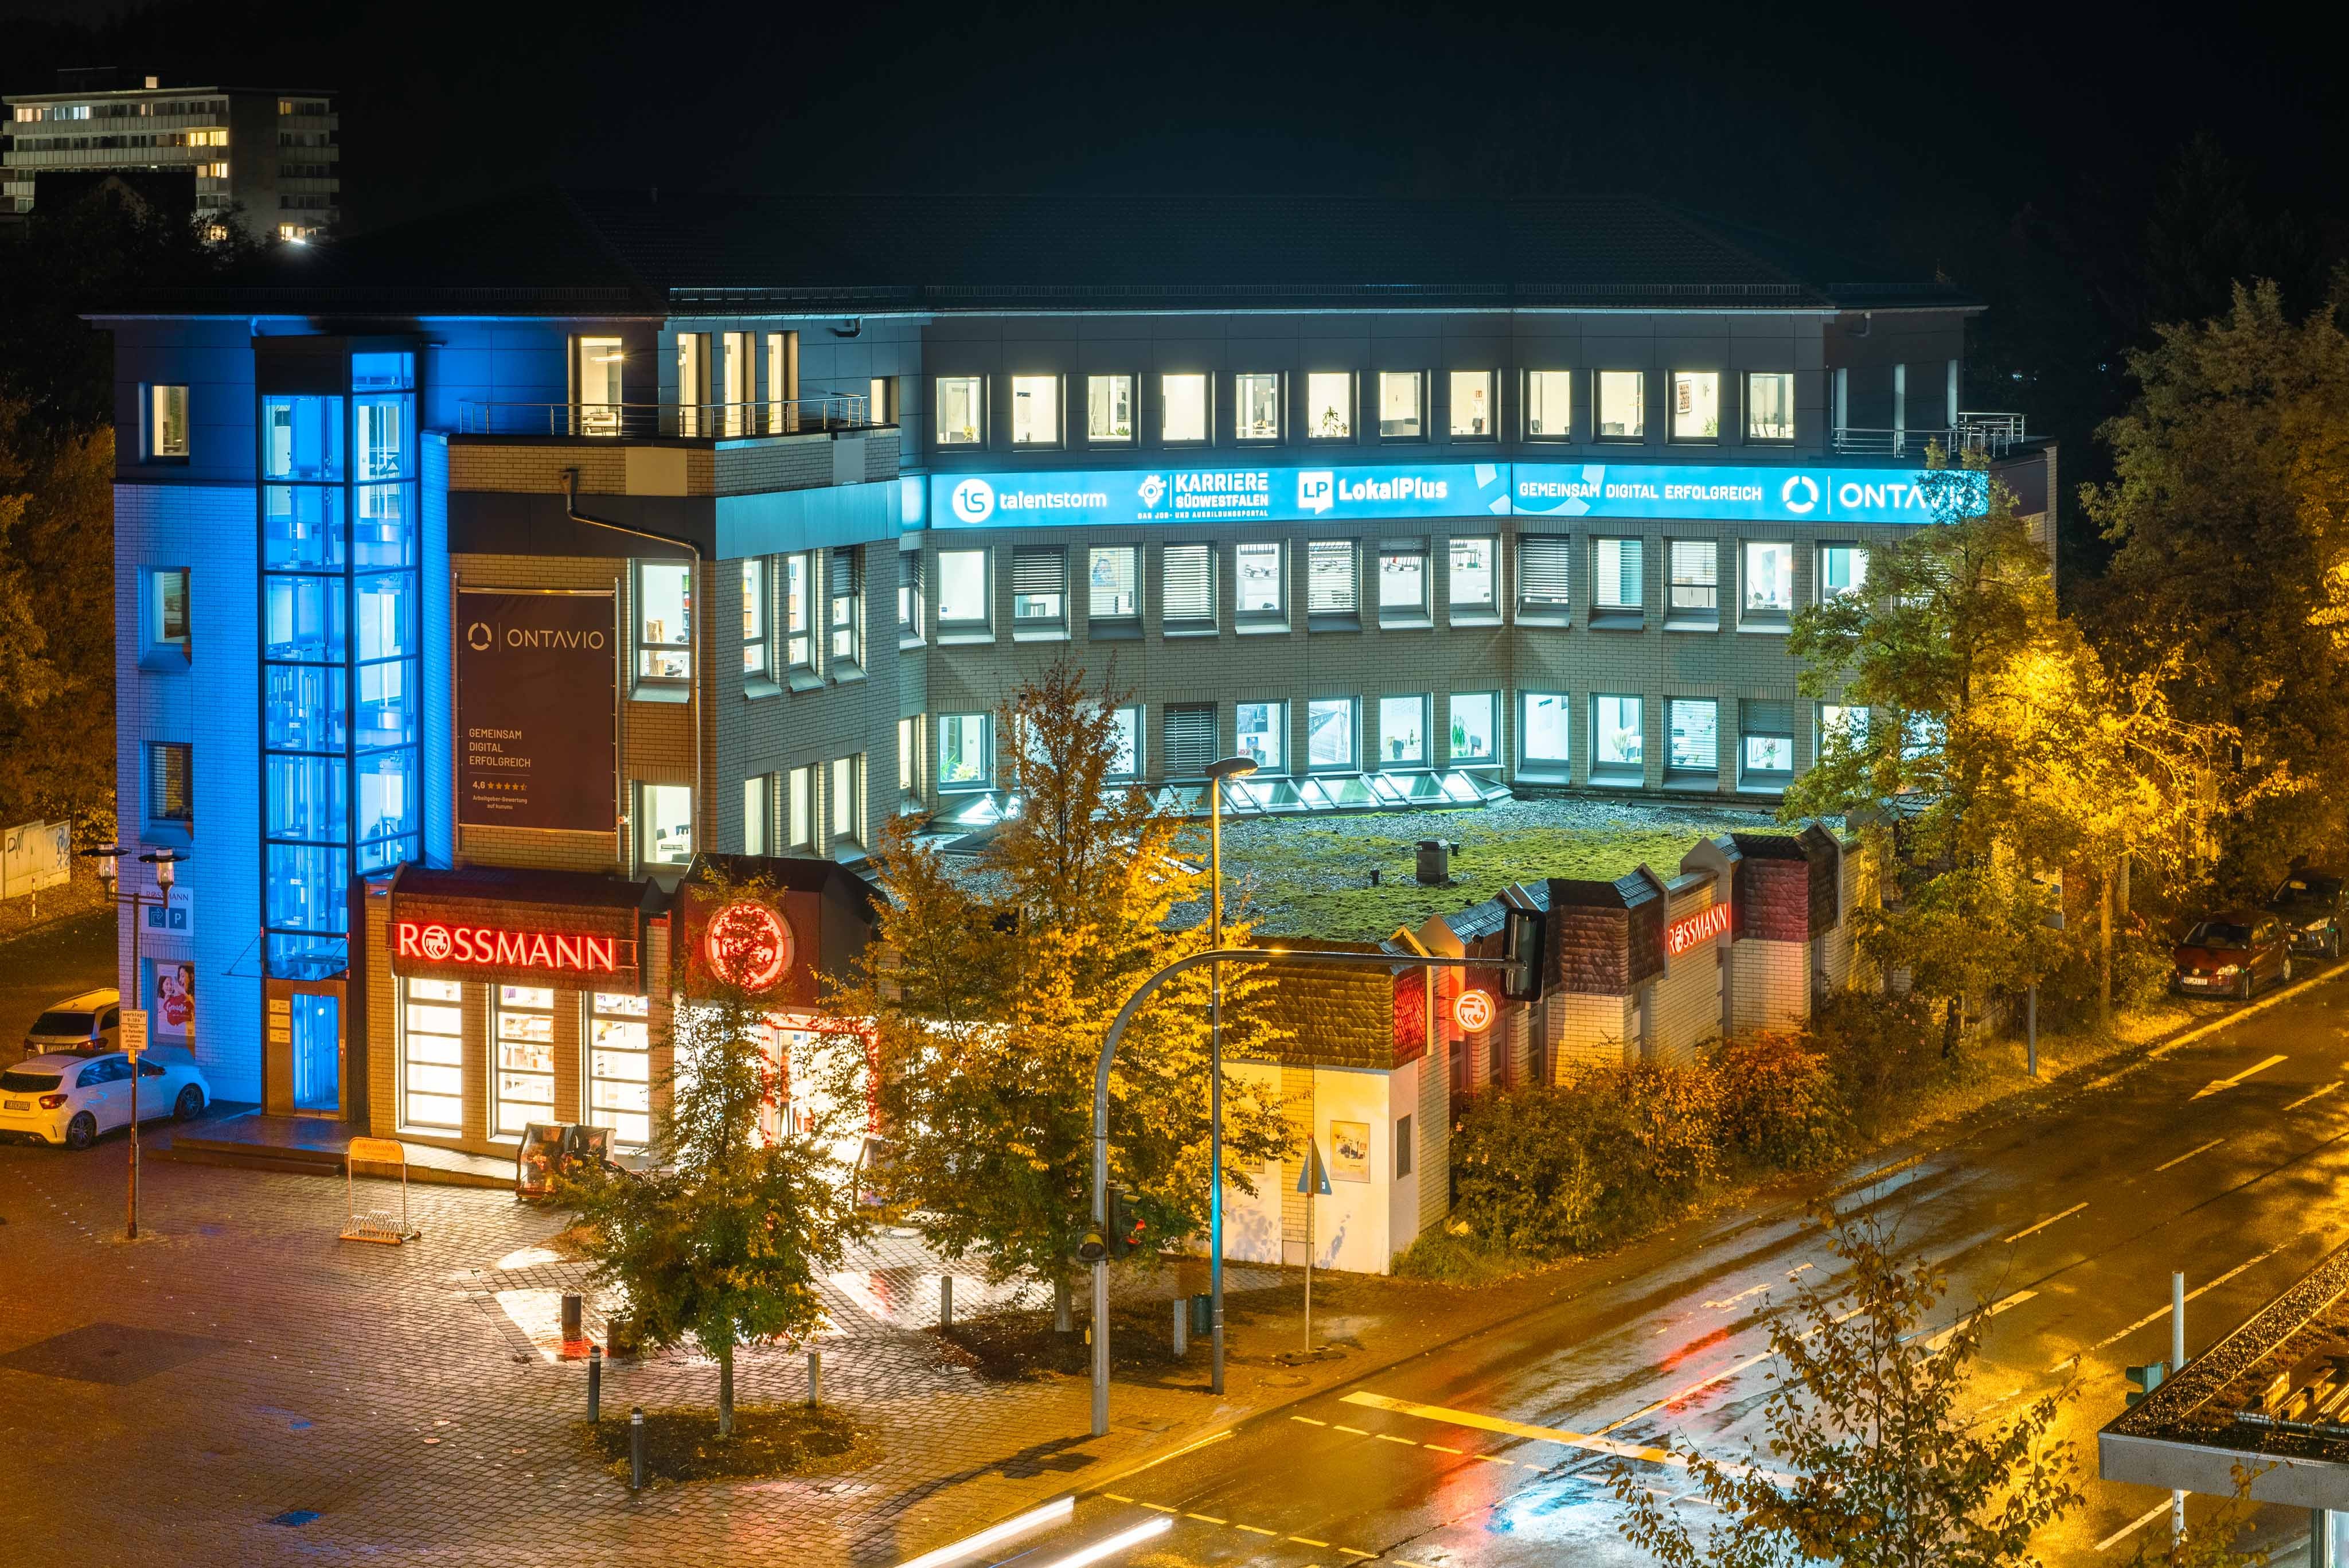 Der Unternehmenssitz von der ontavio GmbH, zu dessen Produkten auch LokalPlus gehört, ist an der Hundemstraße in Altenhundem. von Nils Dinkel